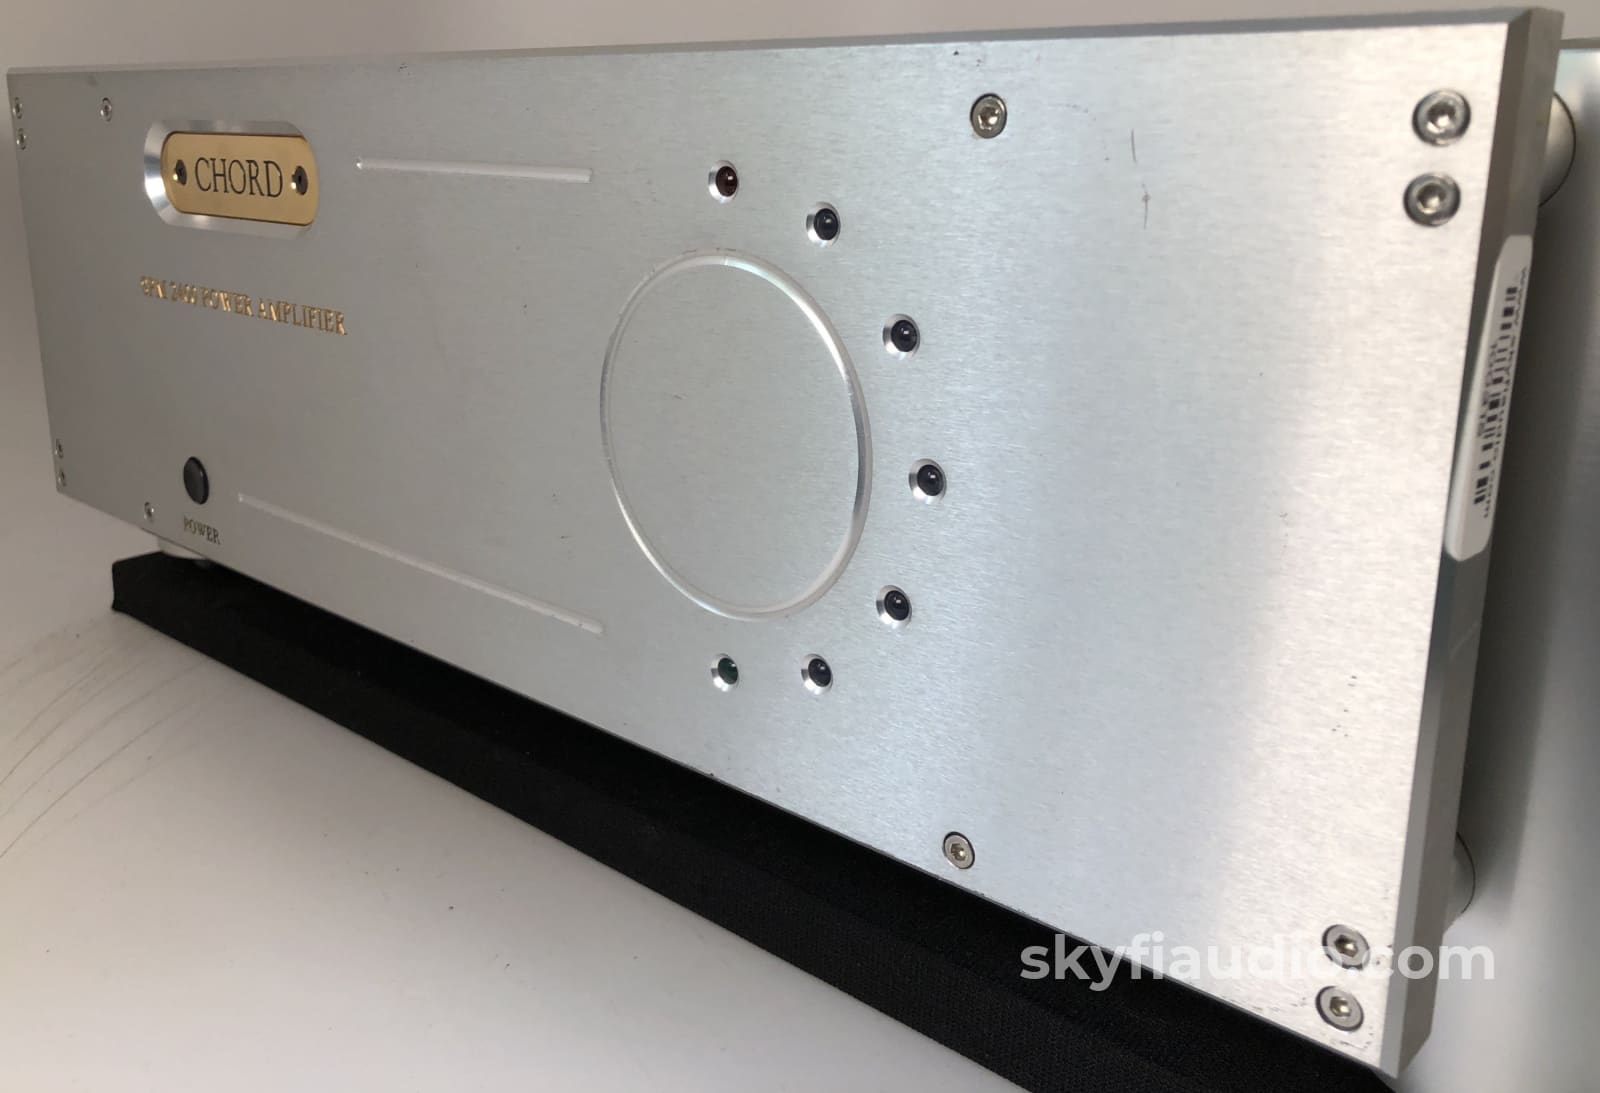 Chord Spm-2400 Multi-Channel Amplifier - 5 X 135W